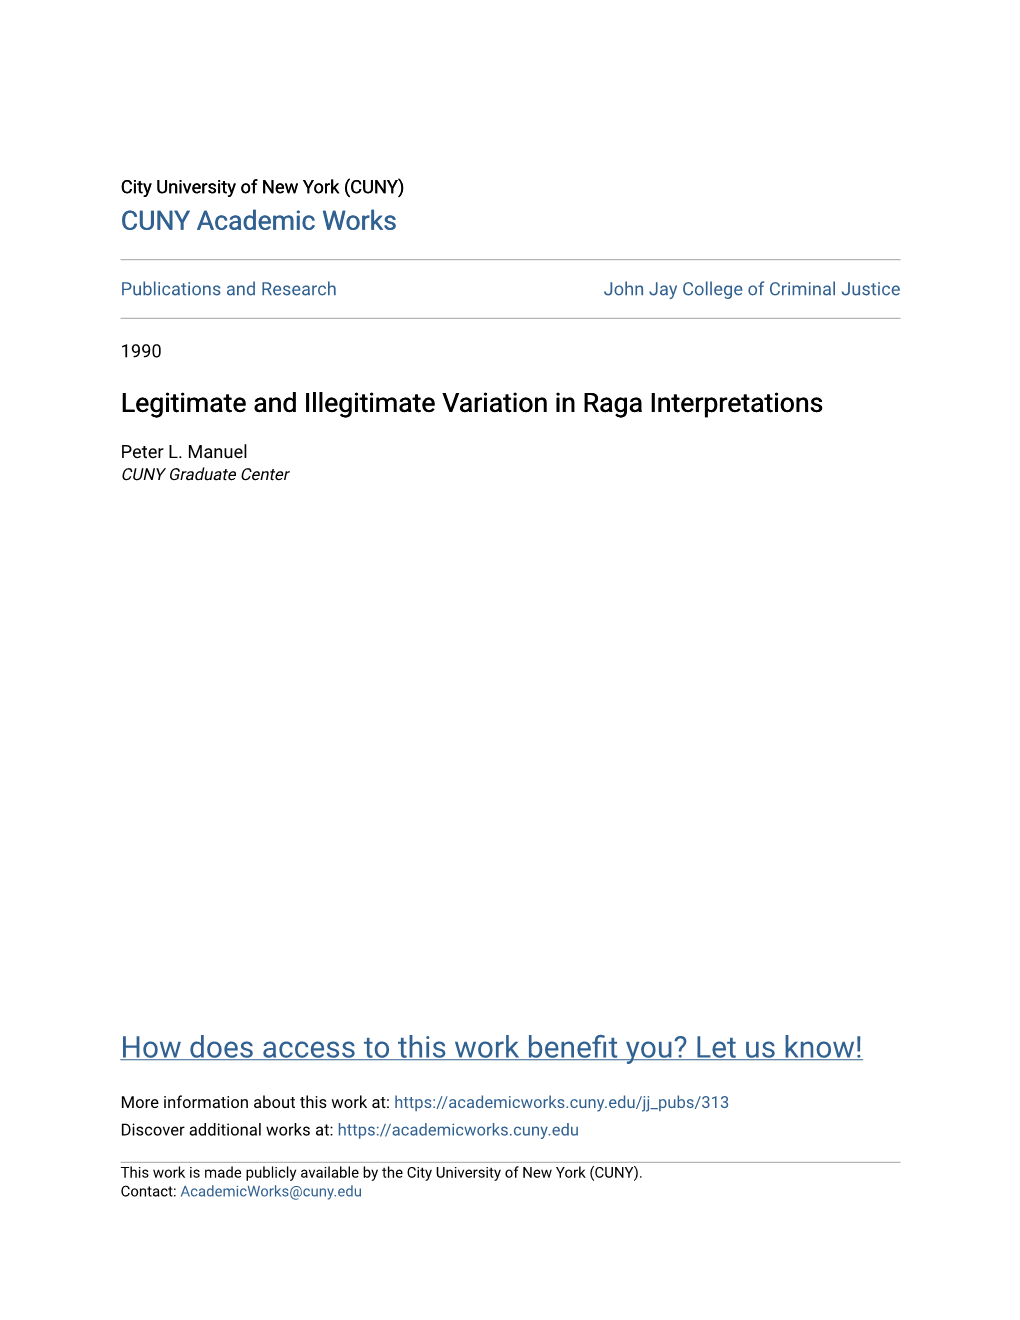 Legitimate and Illegitimate Variation in Raga Interpretations